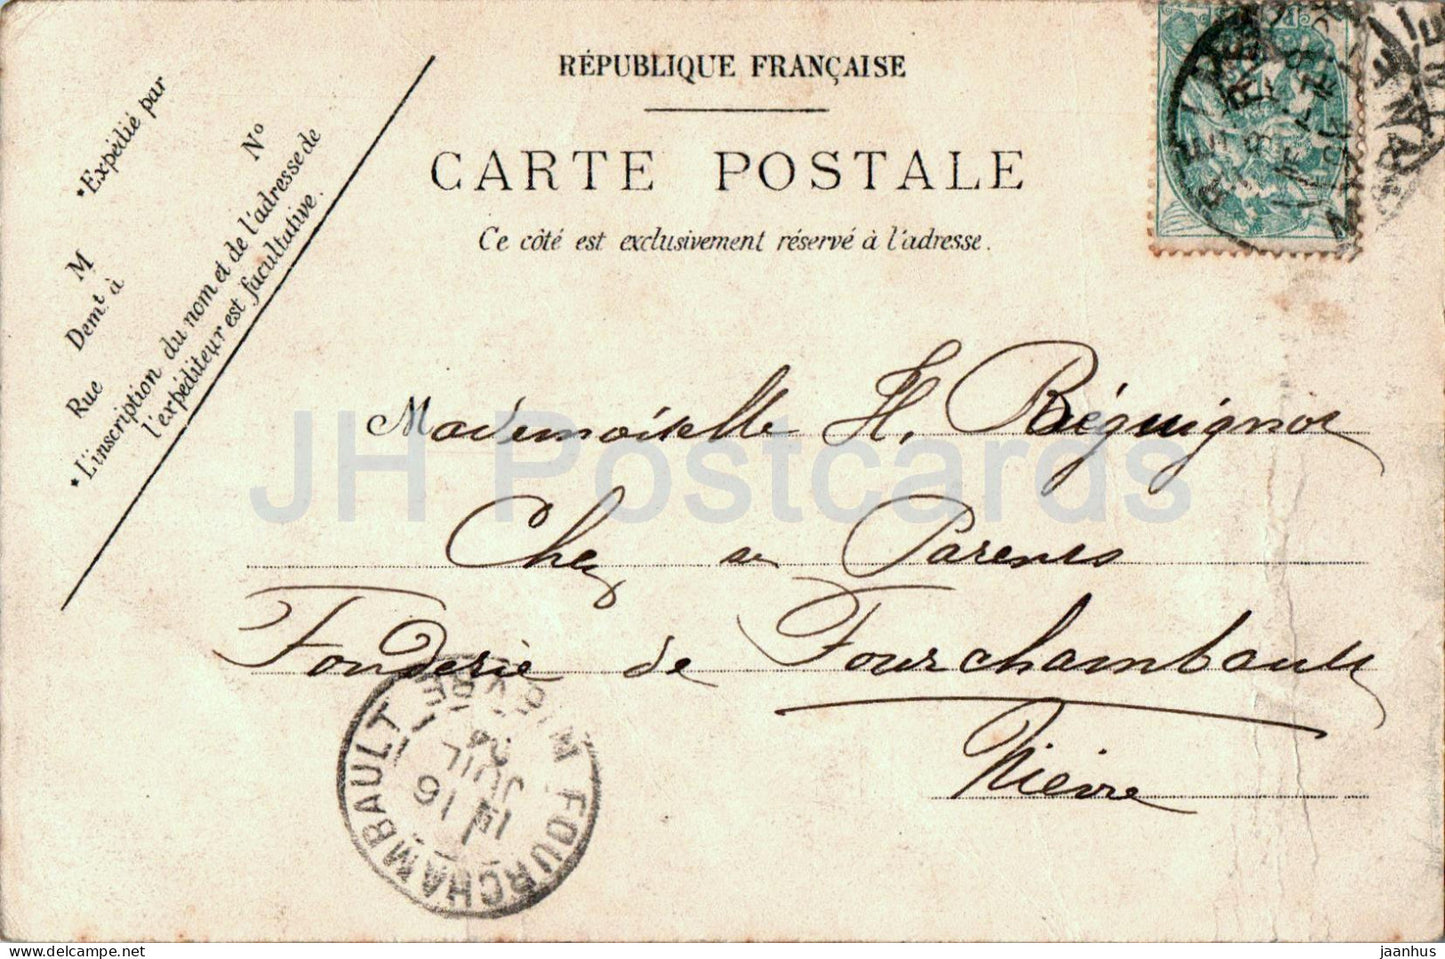 Saint Martin D'Ablois - La Source du Sourdon - Les Environs d'Epernay - 29 - alte Postkarte - 1904 - Frankreich - gebraucht